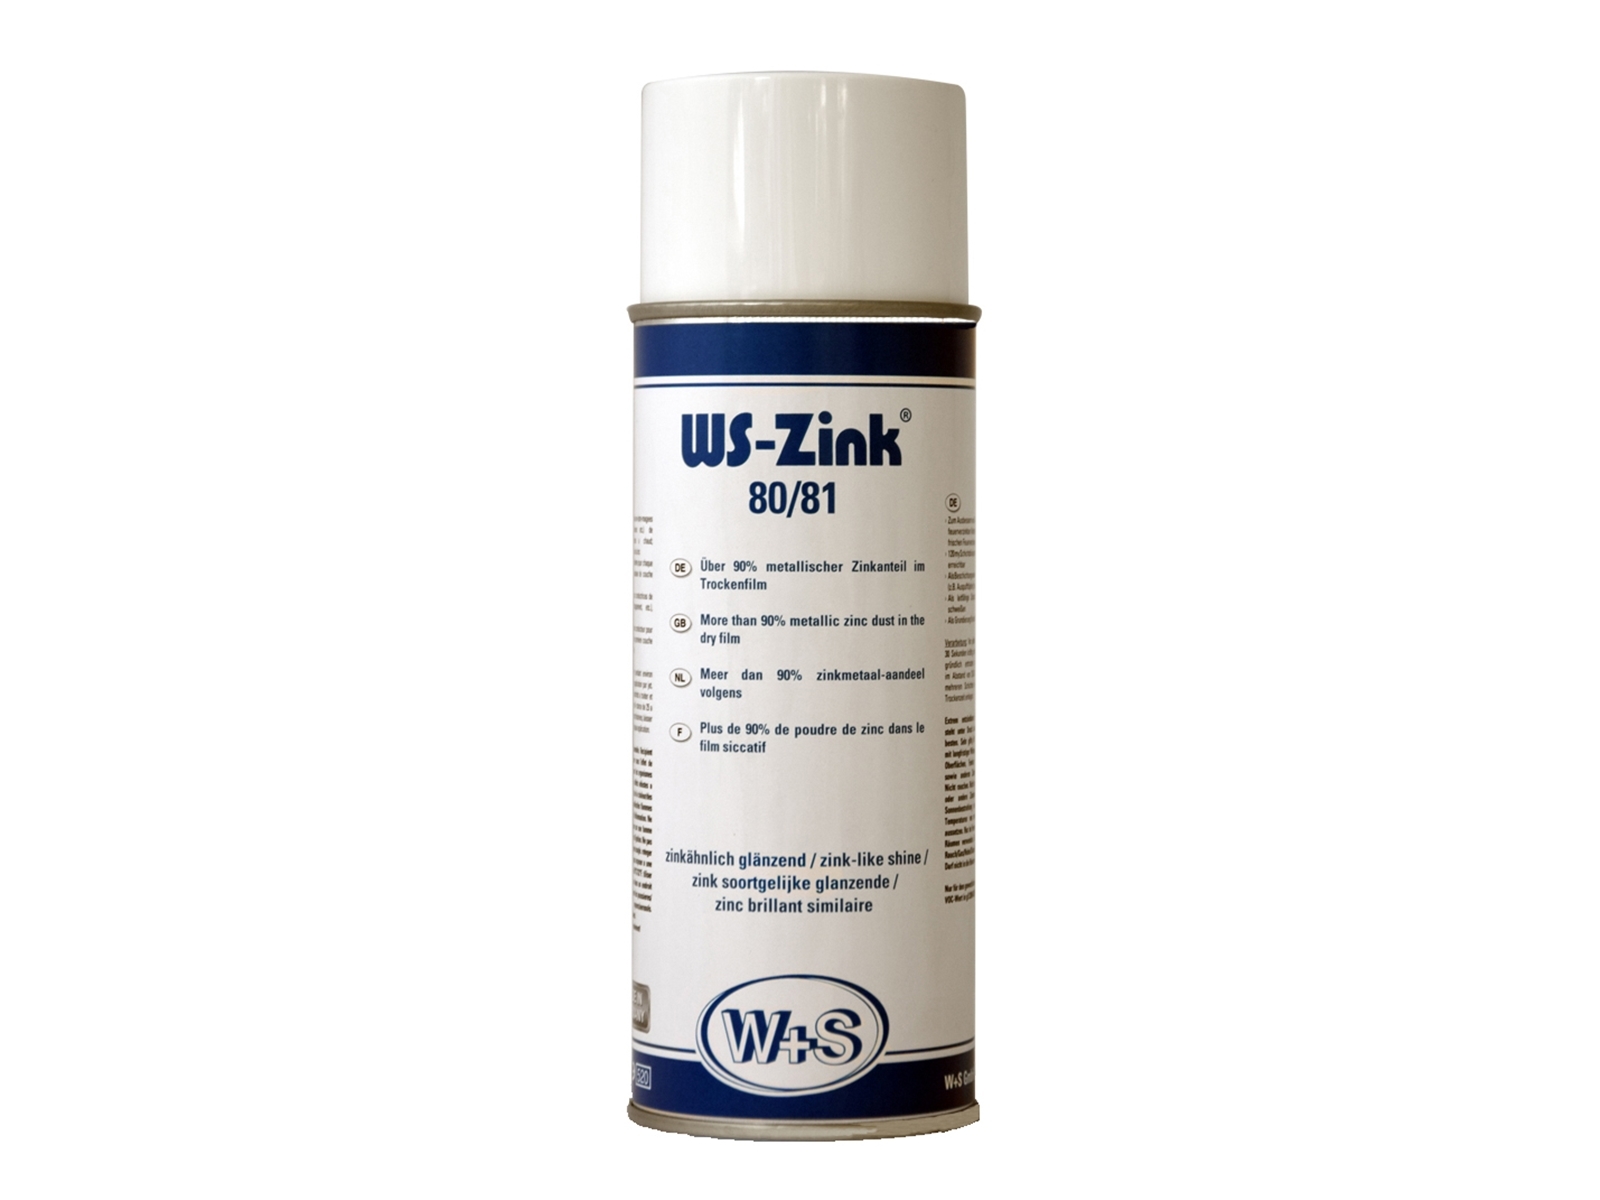 W+S zinkspray, WS-Zink 80/81 (400ml)